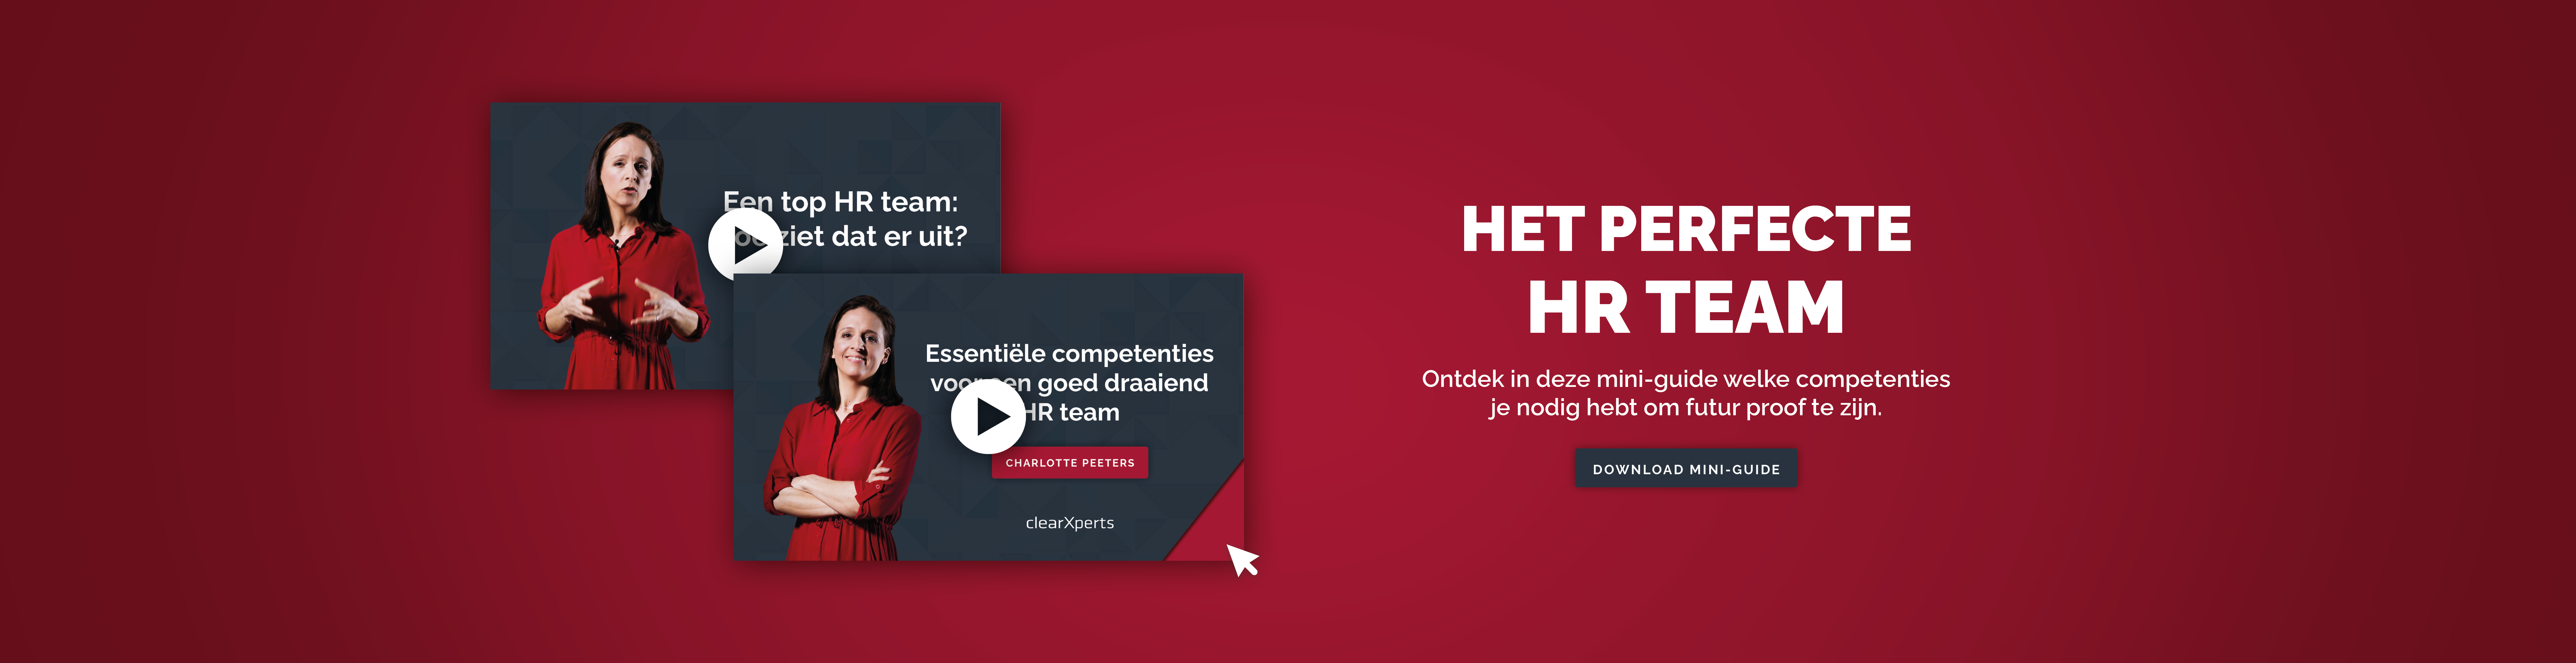 Banner Hubspot_Het perfect HR team